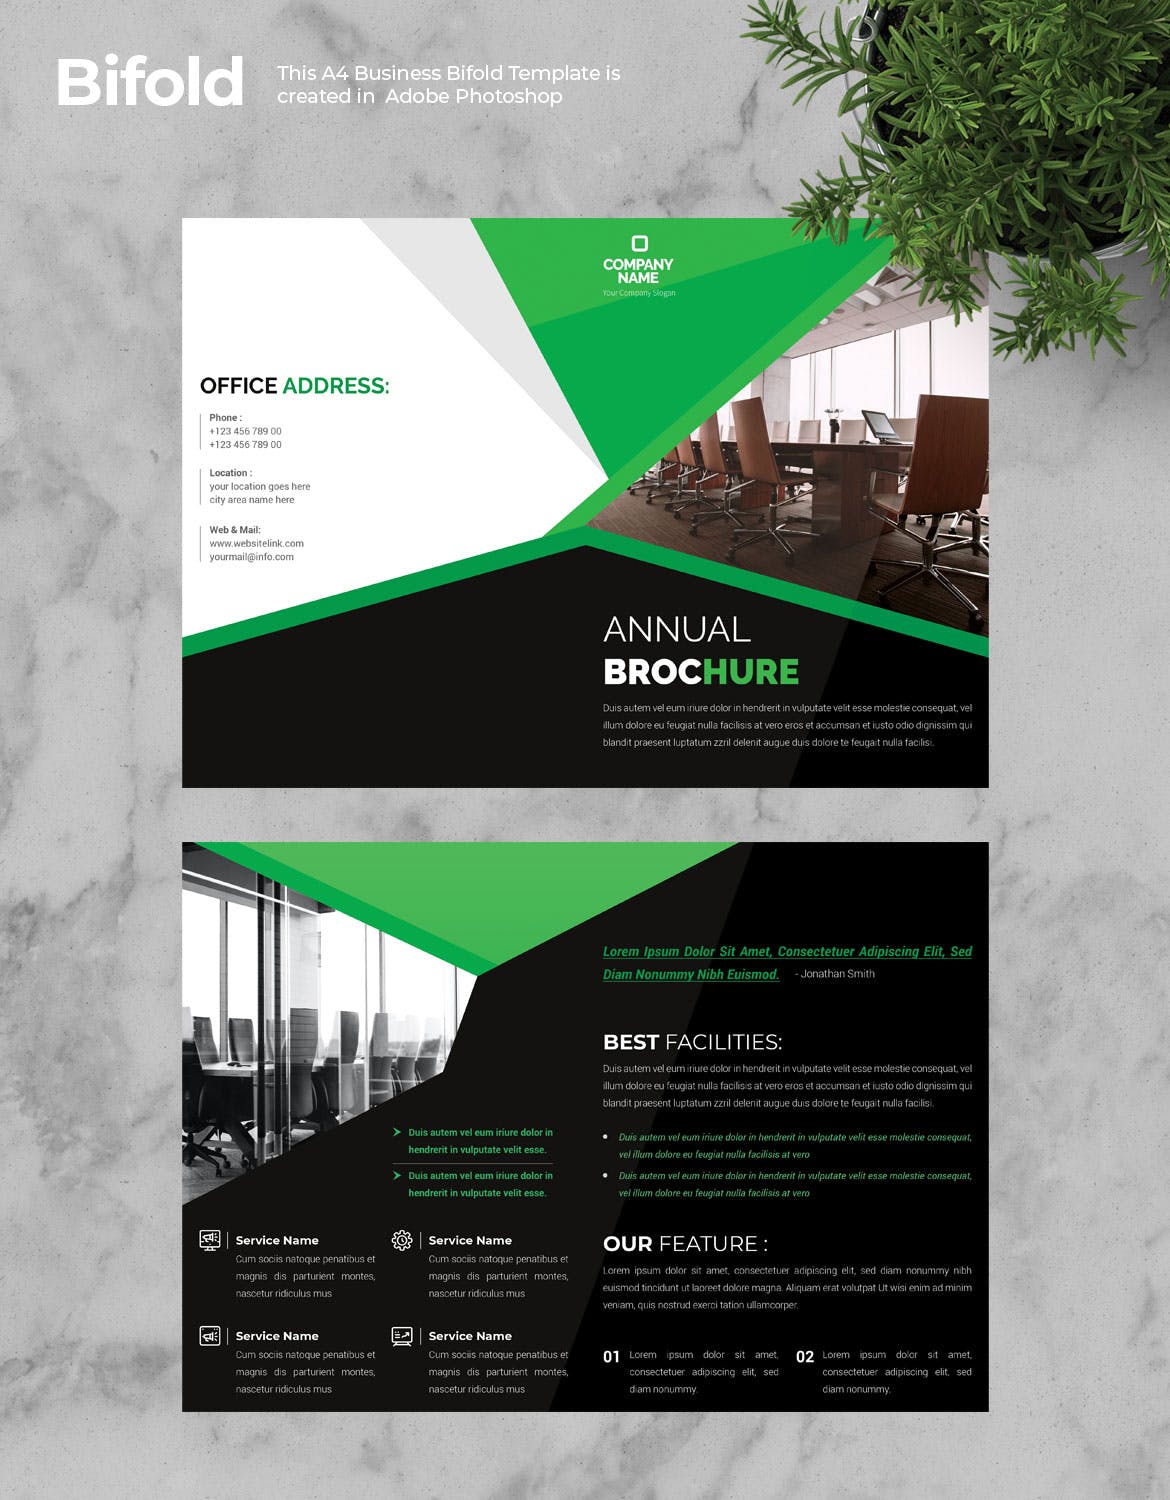 高端上市公司介绍对折页宣传册设计模板v2 Business Bifold Brochure插图1